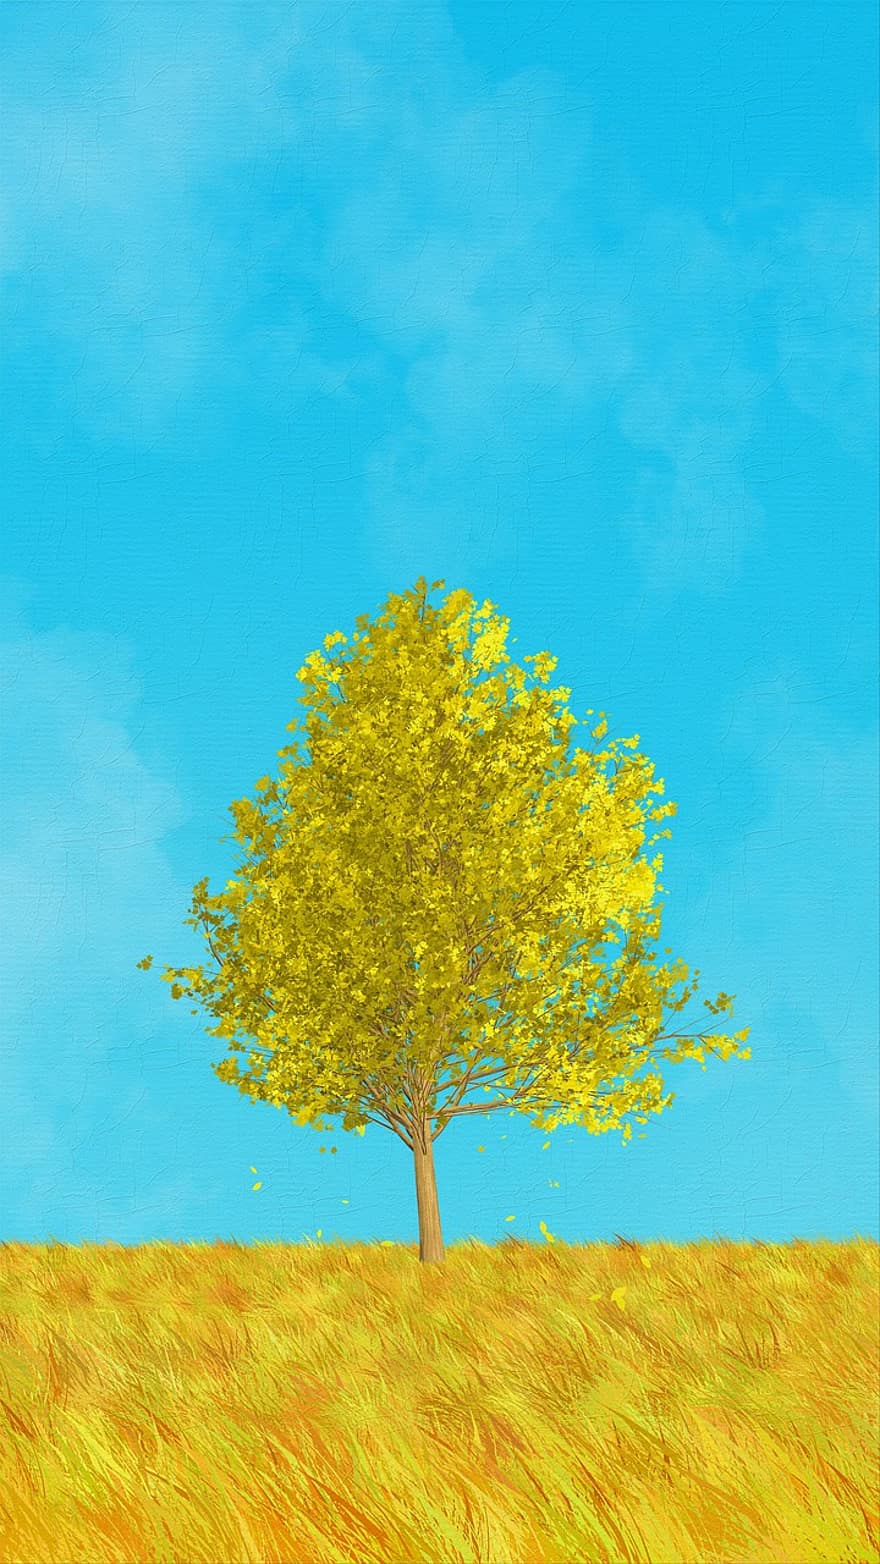 obraz, kreatywność, łąka, drzewo, jesień, niebieski obraz, niebieska farba